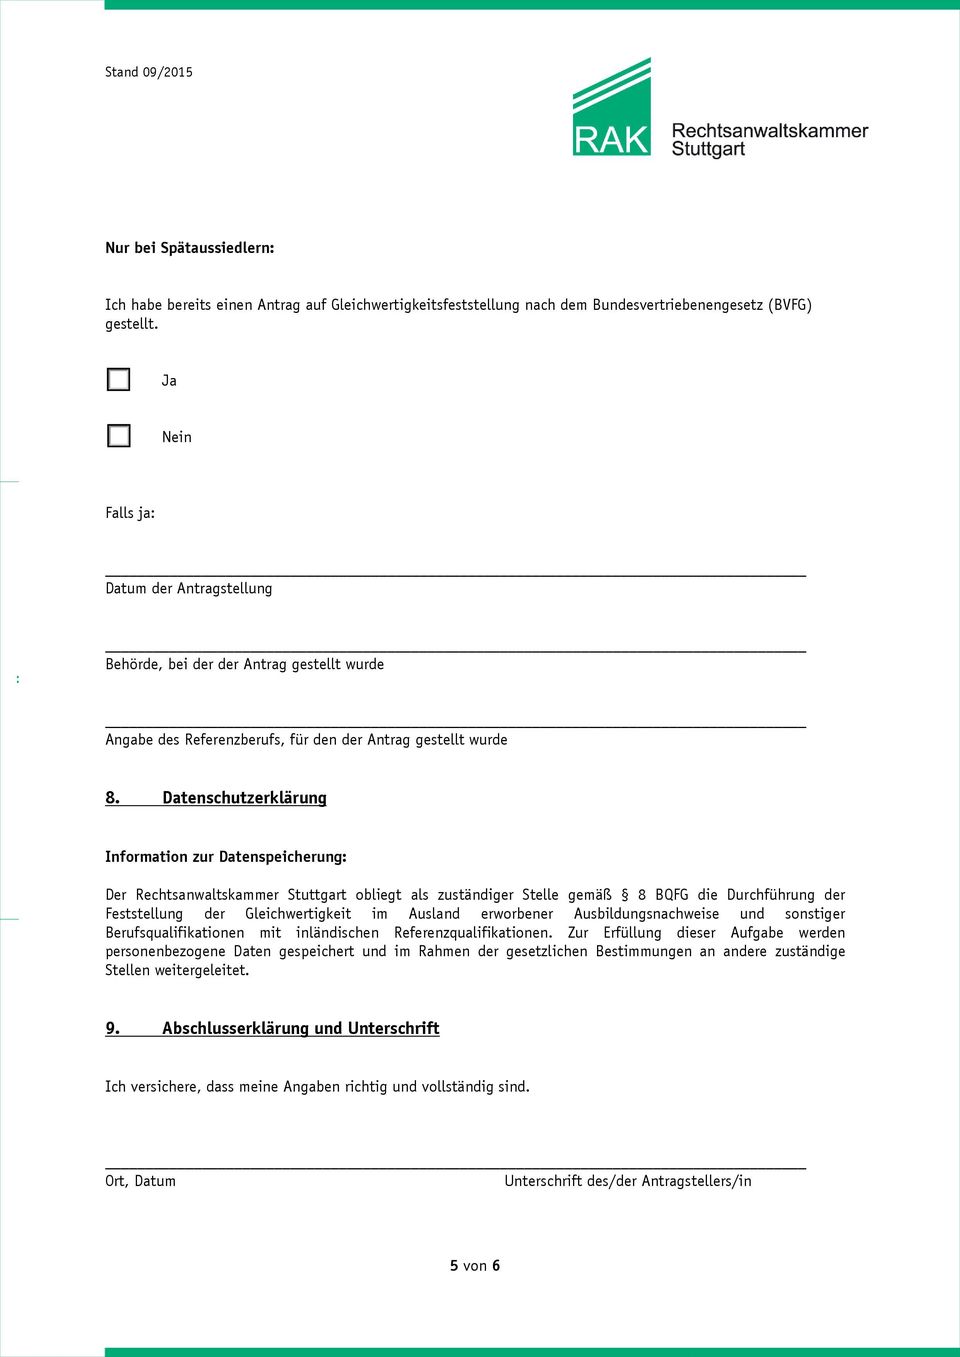 Datenschutzerklärung Information zur Datenspeicherung: Der Rechtsanwaltskammer Stuttgart obliegt als zuständiger Stelle gemäß 8 BQFG die Durchführung der Feststellung der Gleichwertigkeit im Ausland